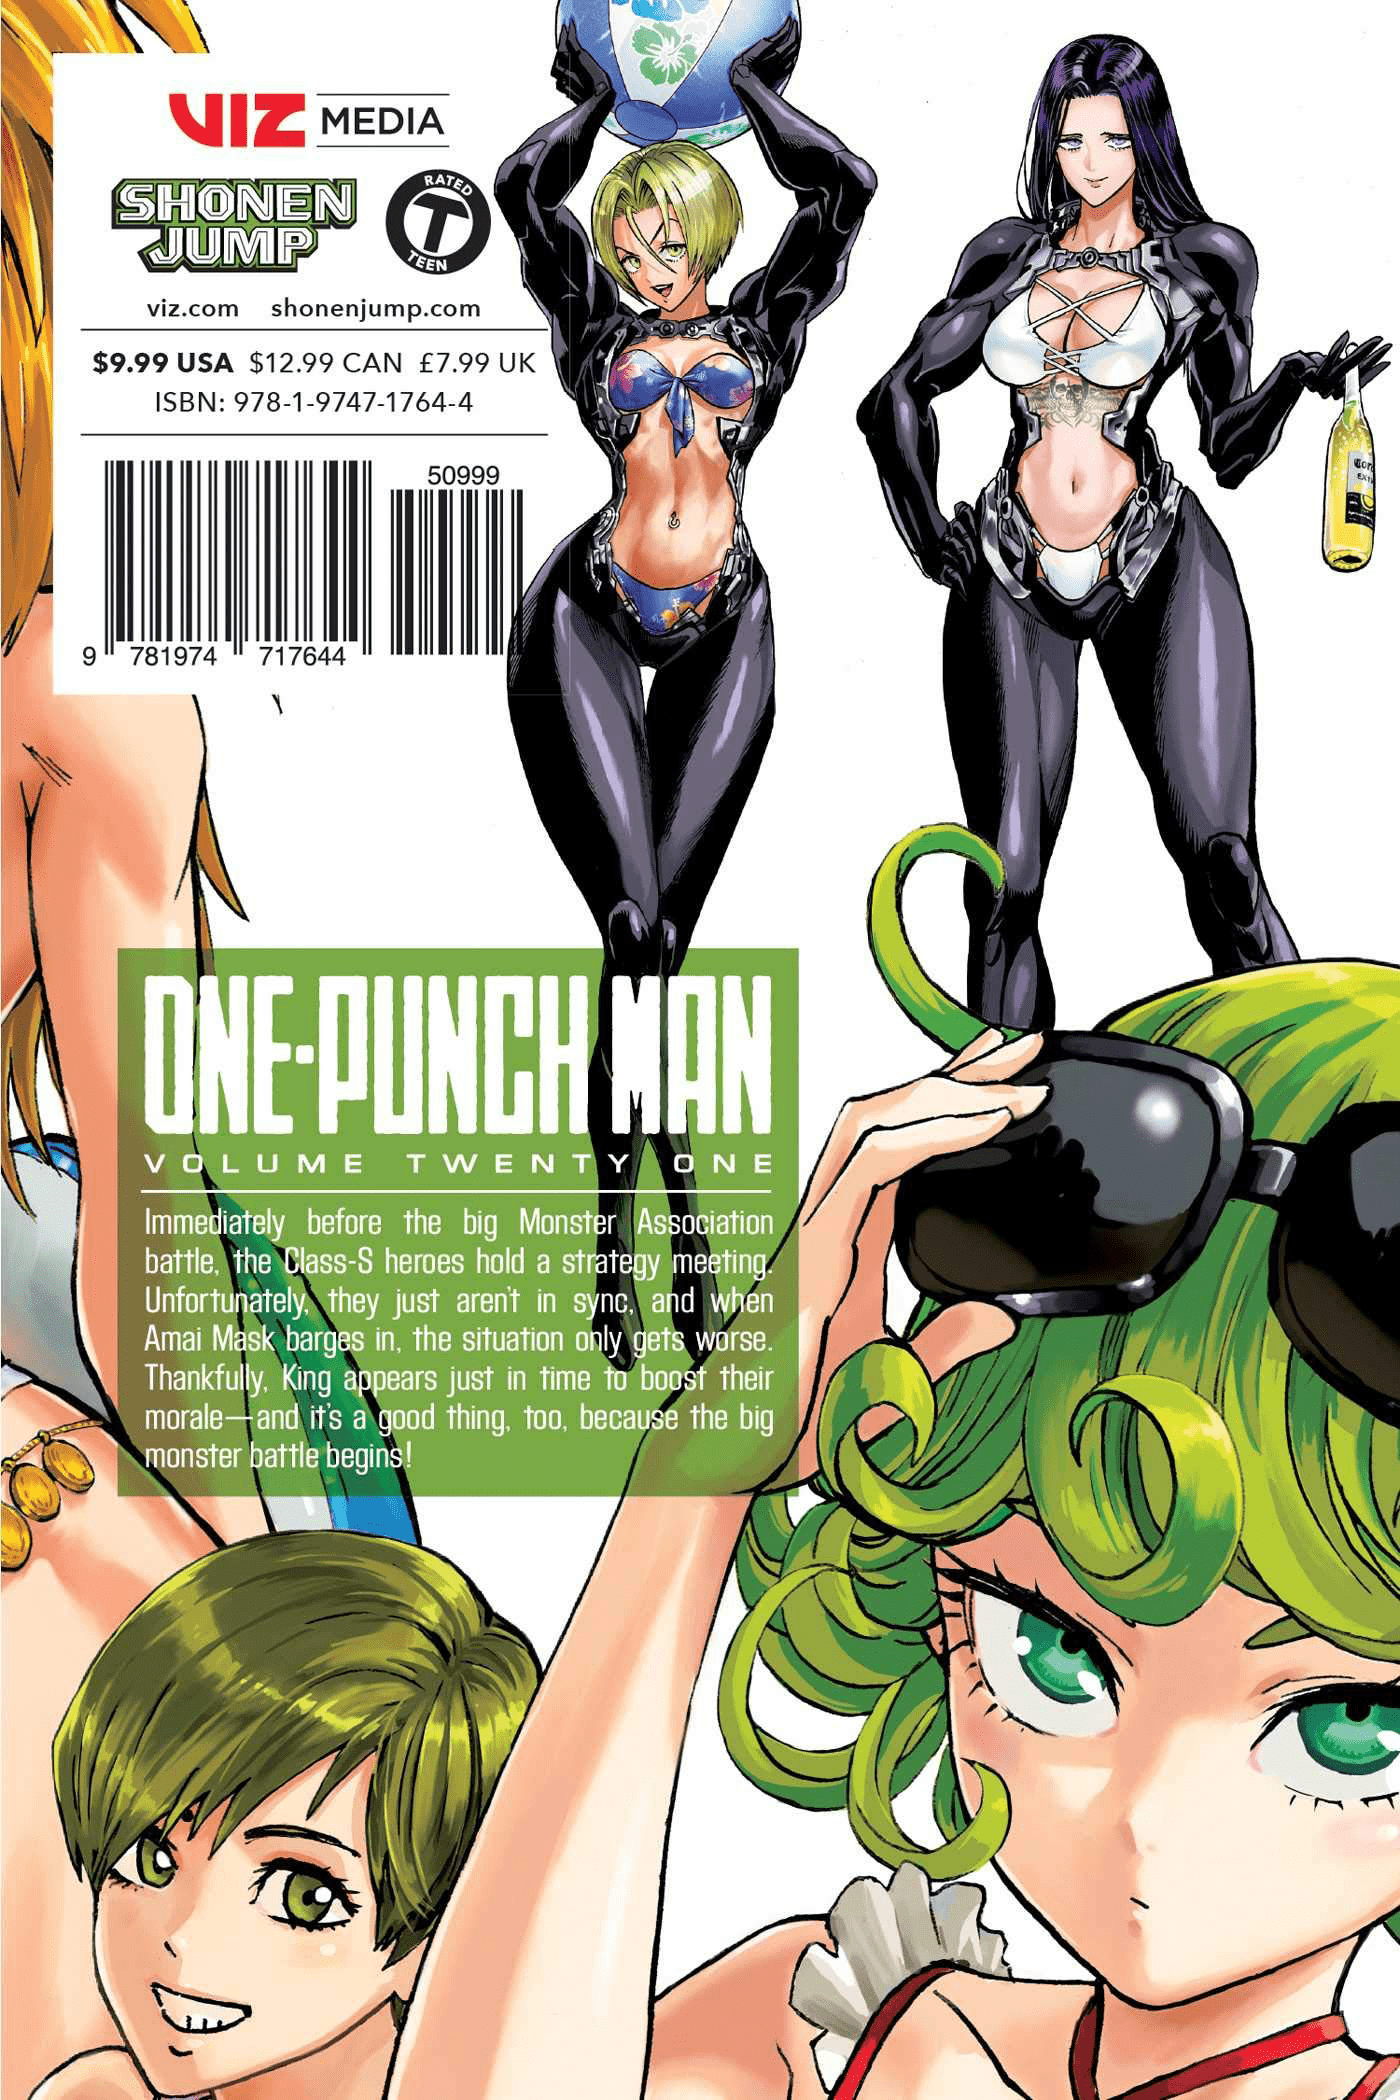 Volume 21, One-Punch Man Wiki